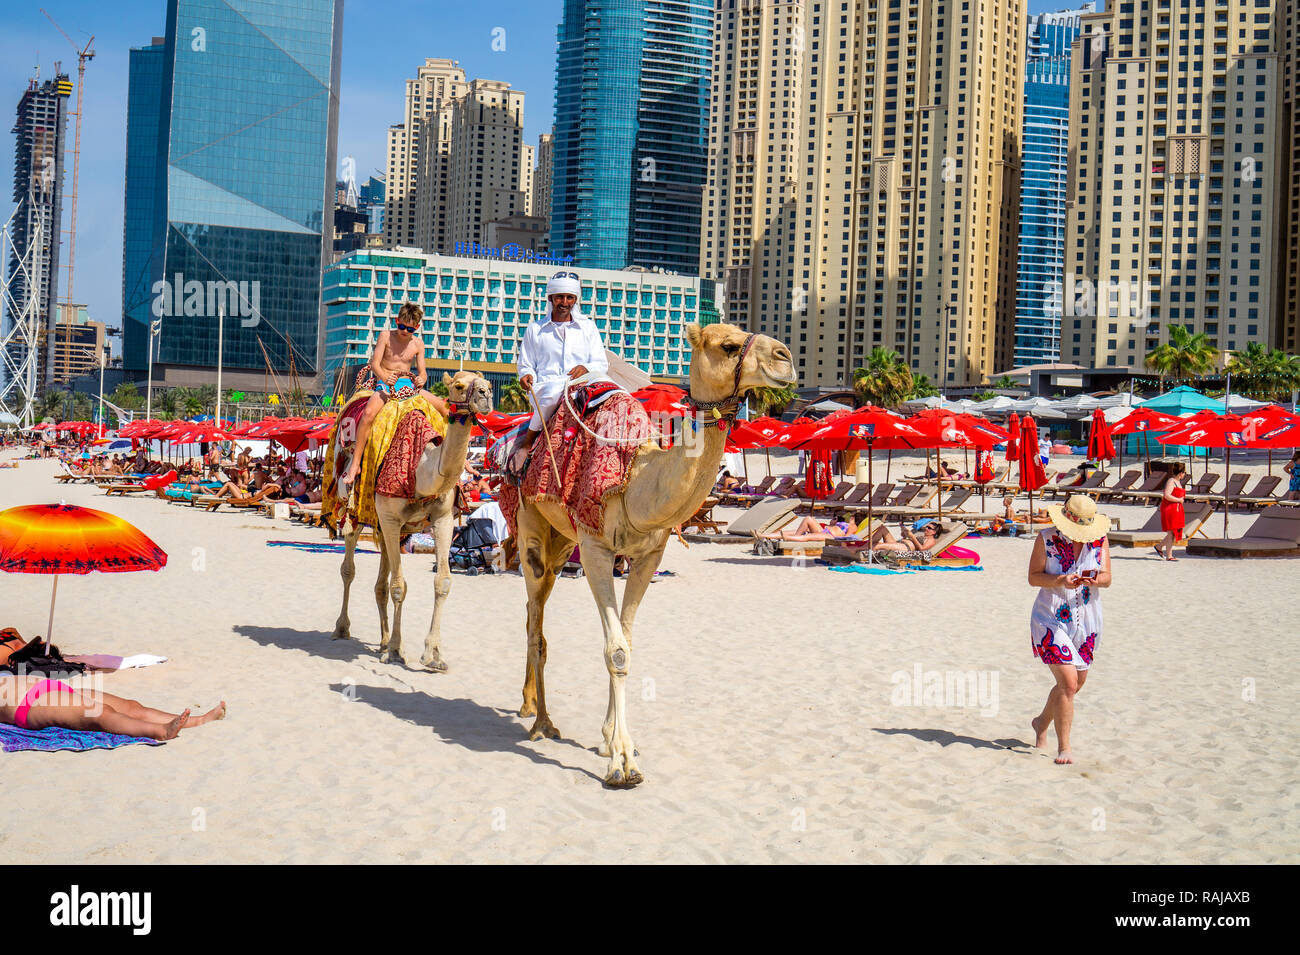 Dubai,UAE / 10.31.2018 : autentic camel ride on the jumeirah JBR beach with an arabian man on the camel Stock Photo